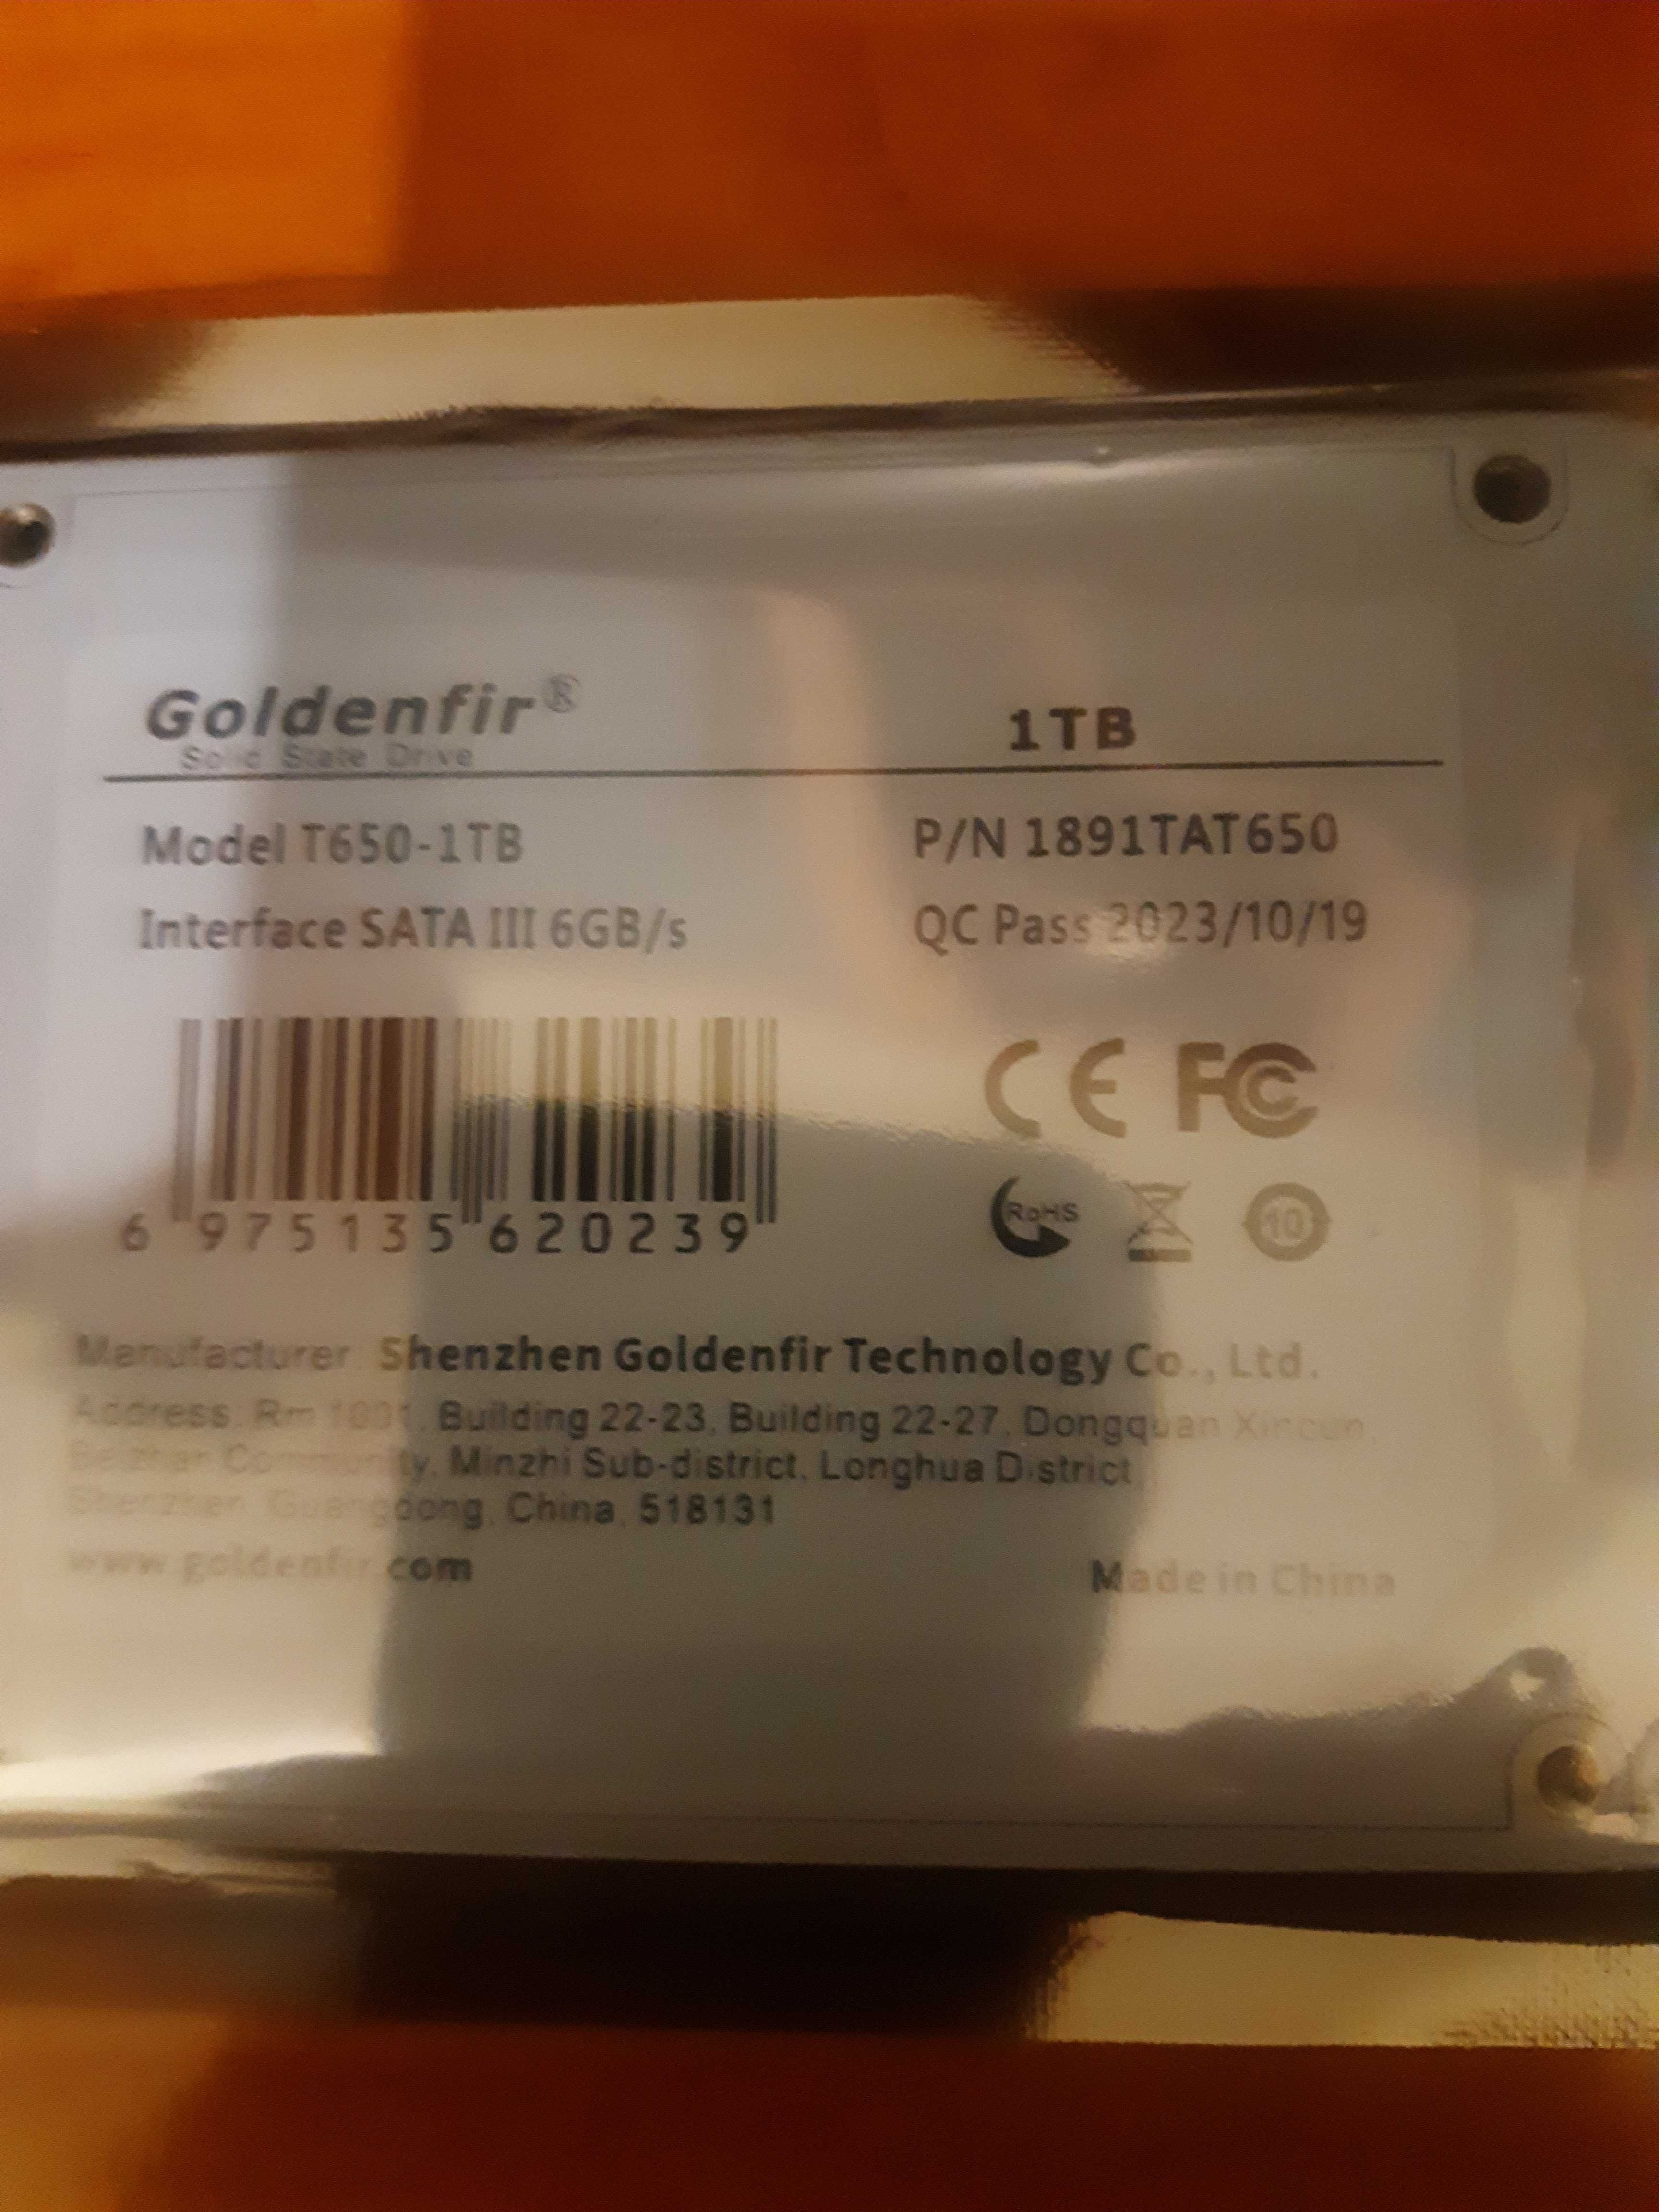 Goldenfir 1TB T650-1TB